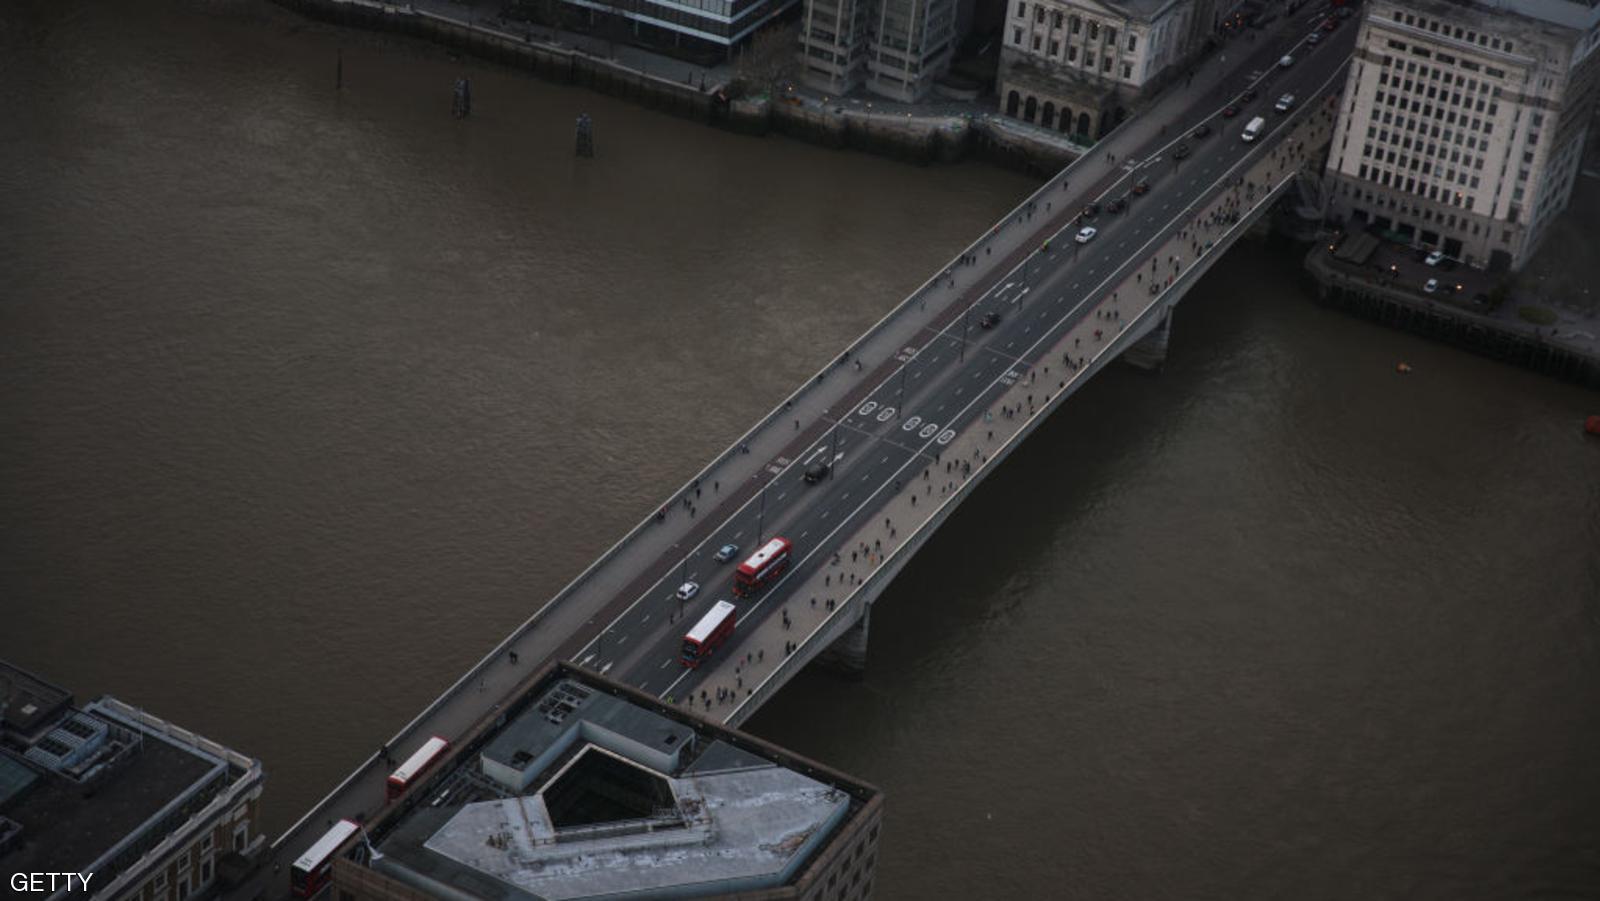 ذبح ودهس على جسر لندن.. تفاصيل صادمة عن حادث “كبير”